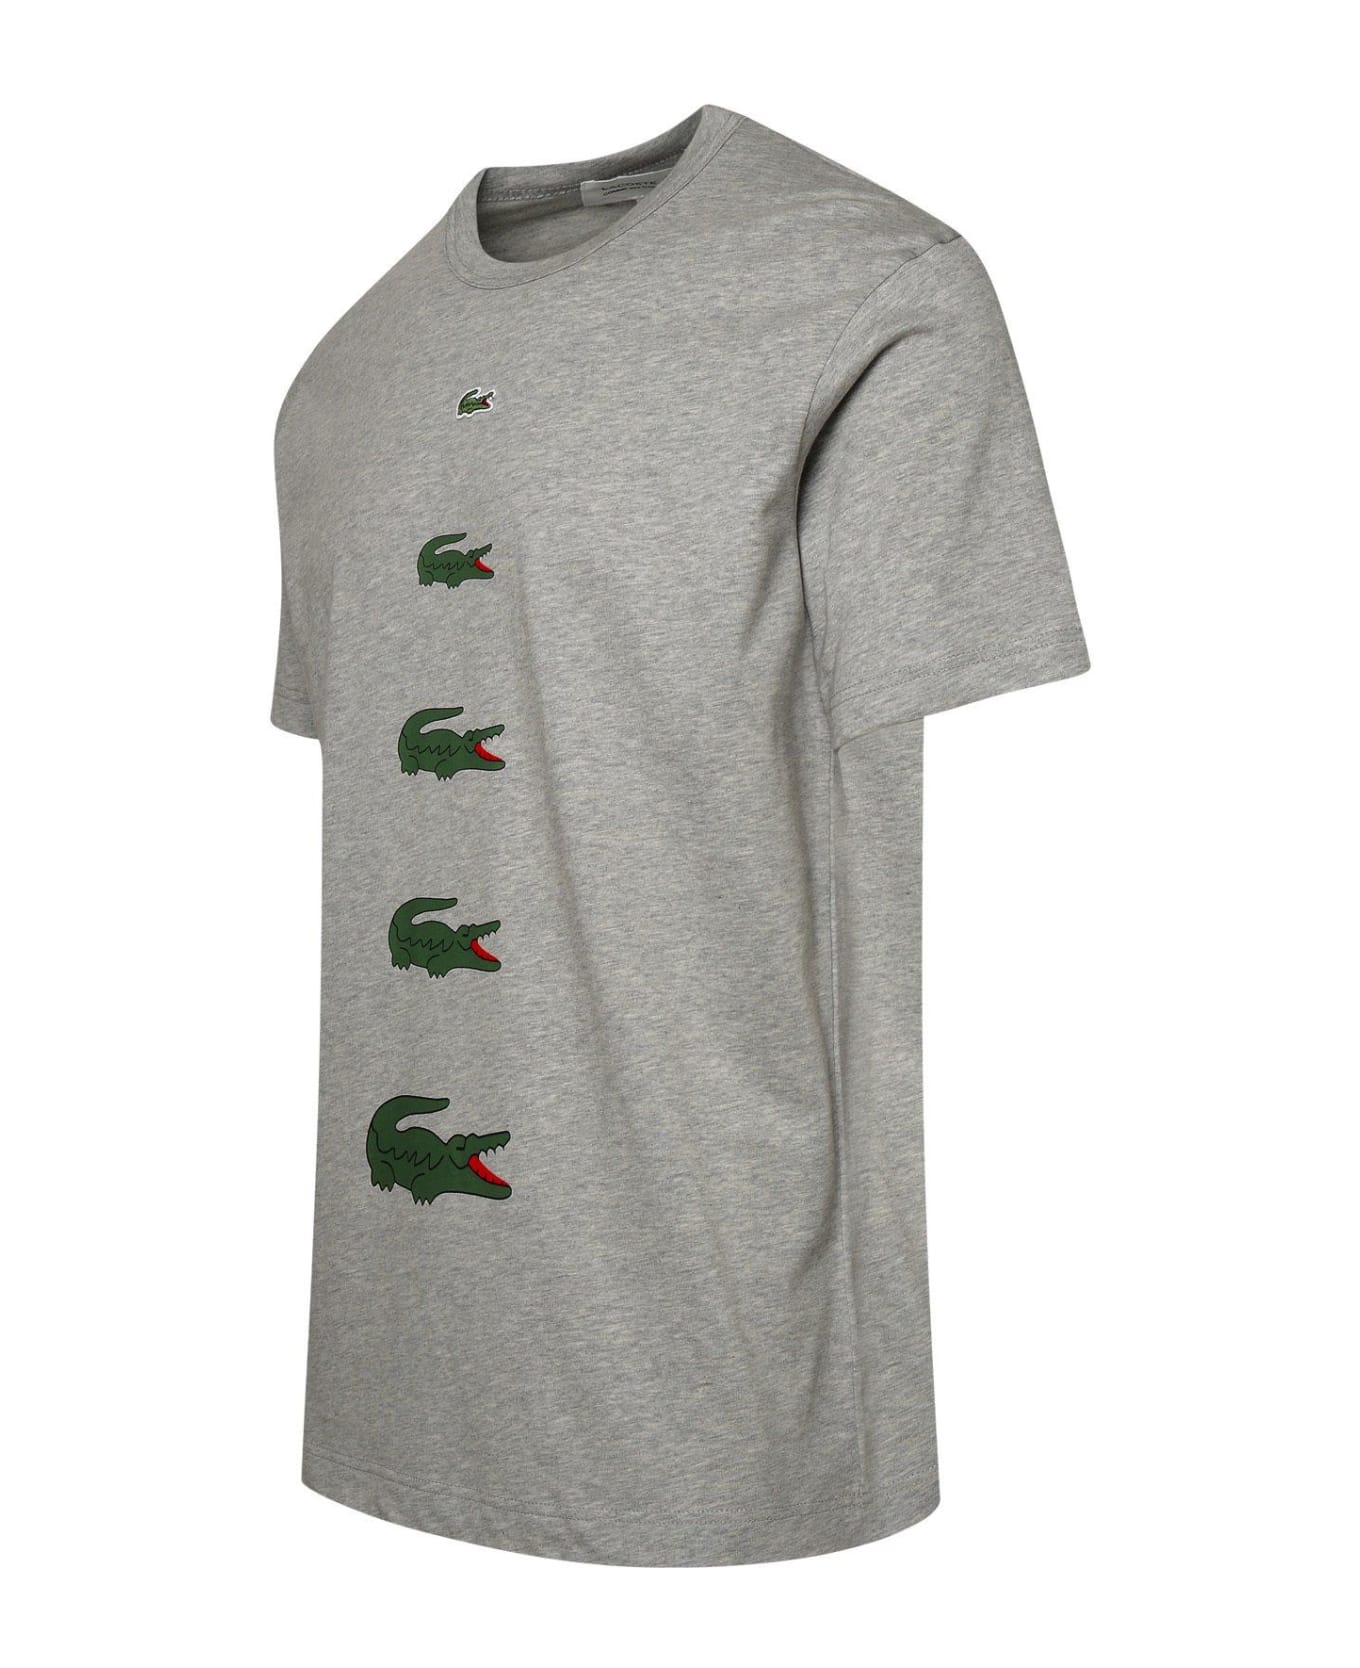 Comme des Garçons X Lacoste Logo Printed Crewneck T-shirt - Grey